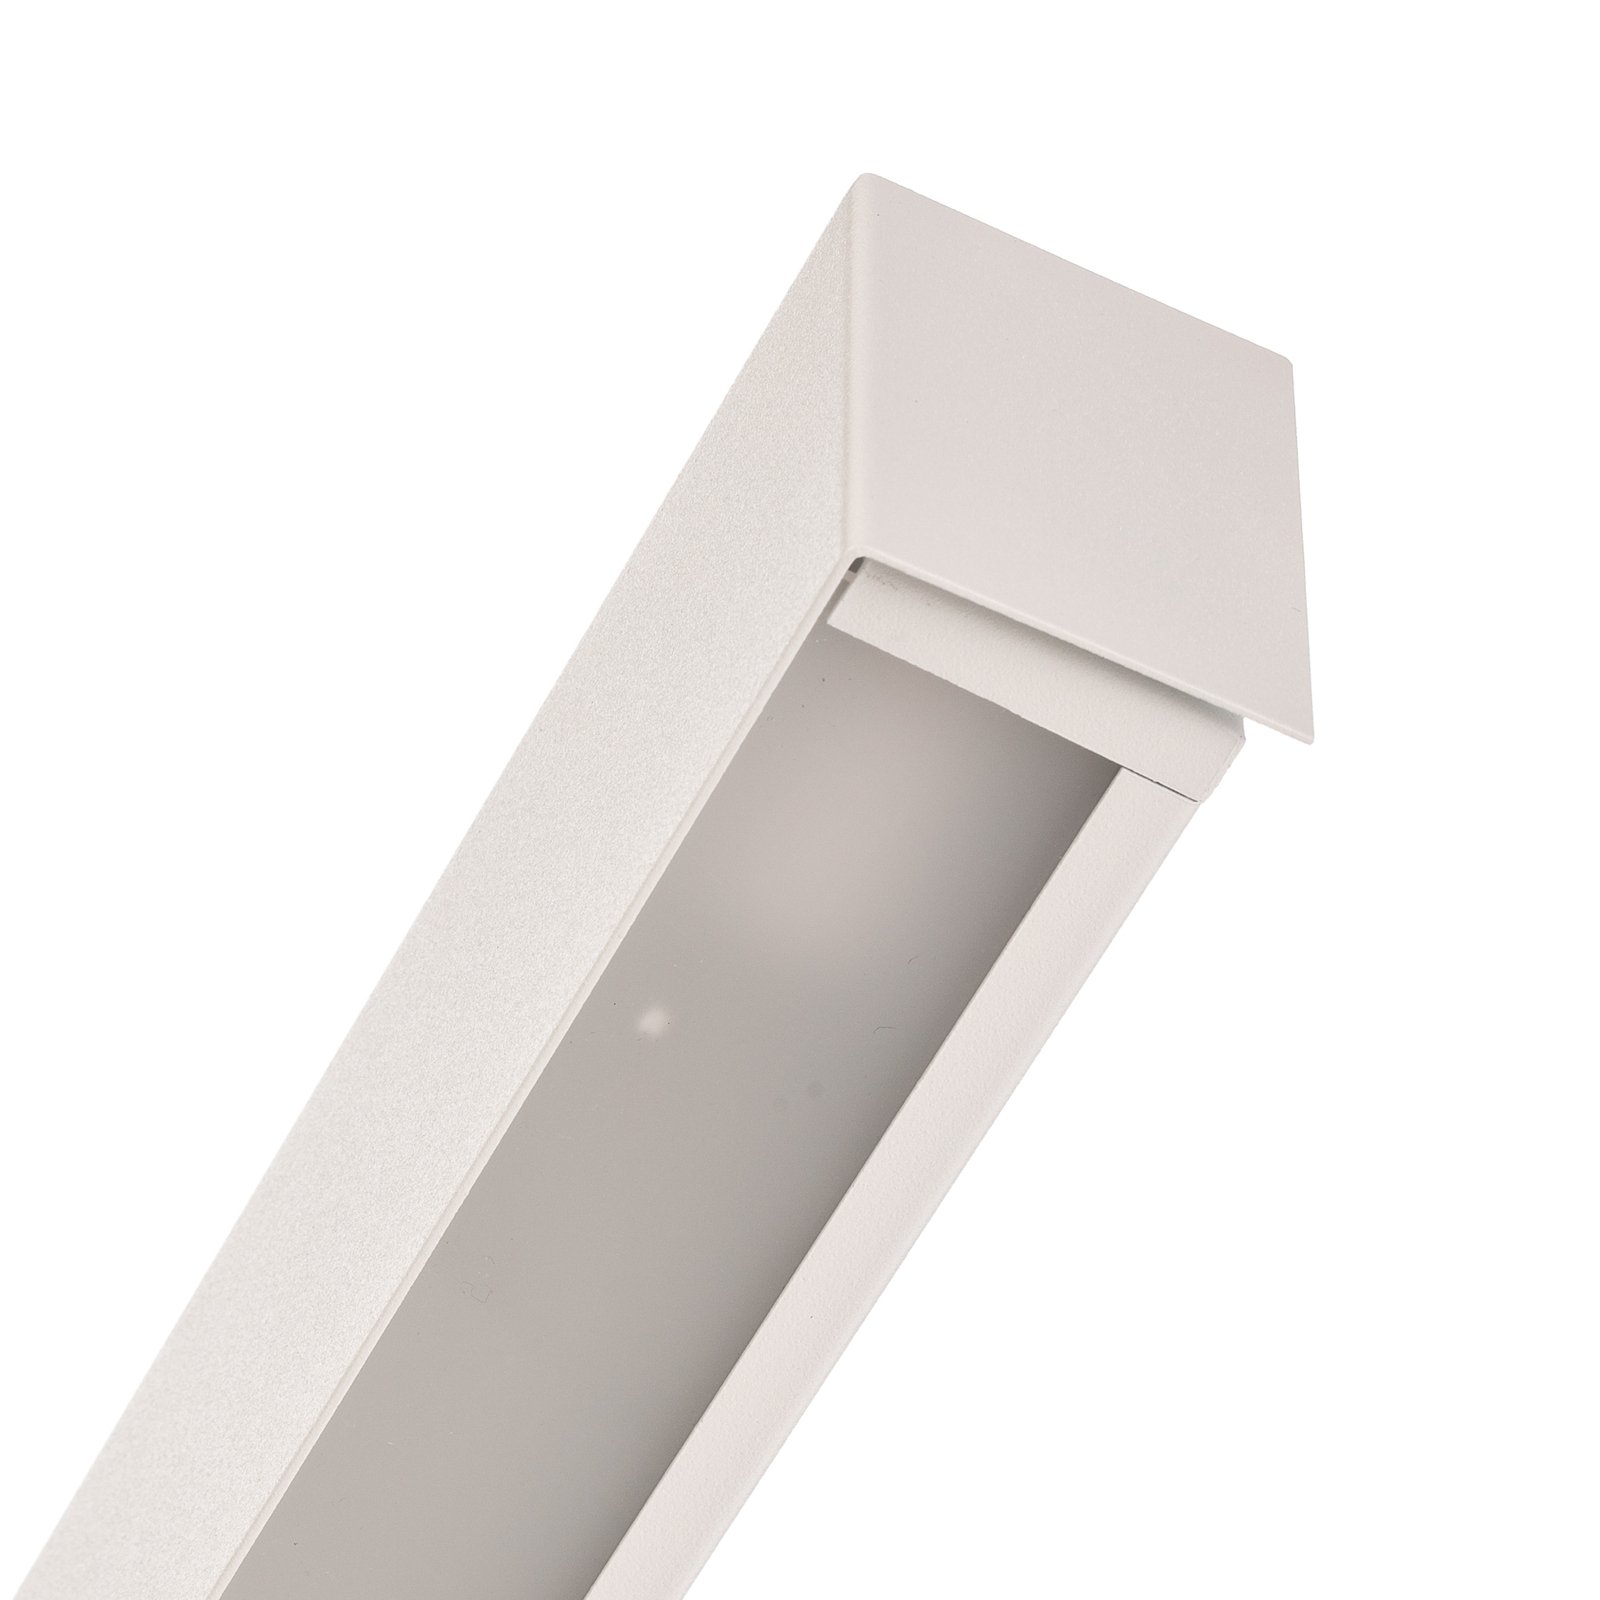 Ravna stenska svetilka L, 122 cm, bela